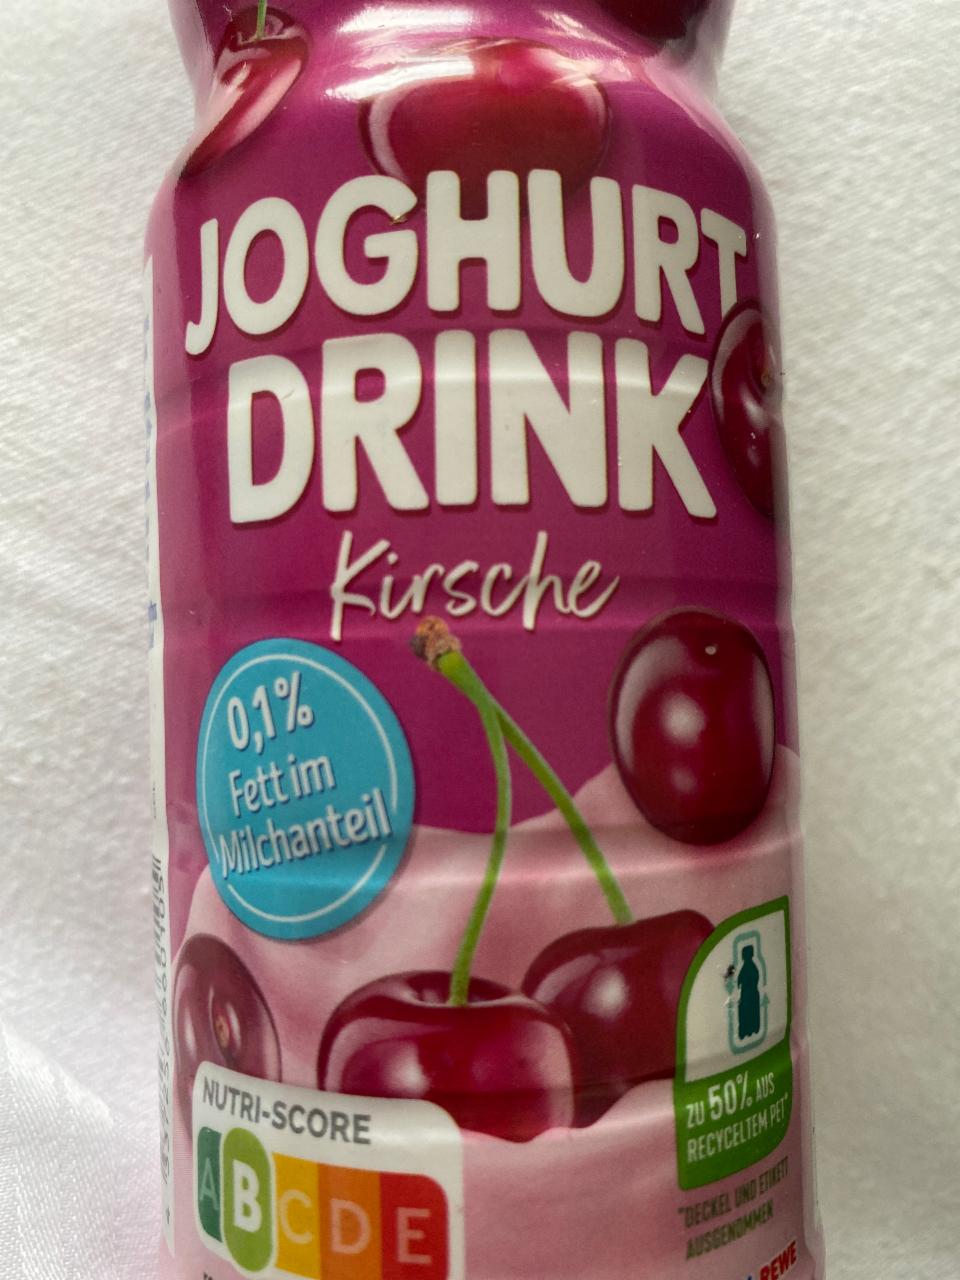 Fotografie - Joghurt drink Kirsche Ja!